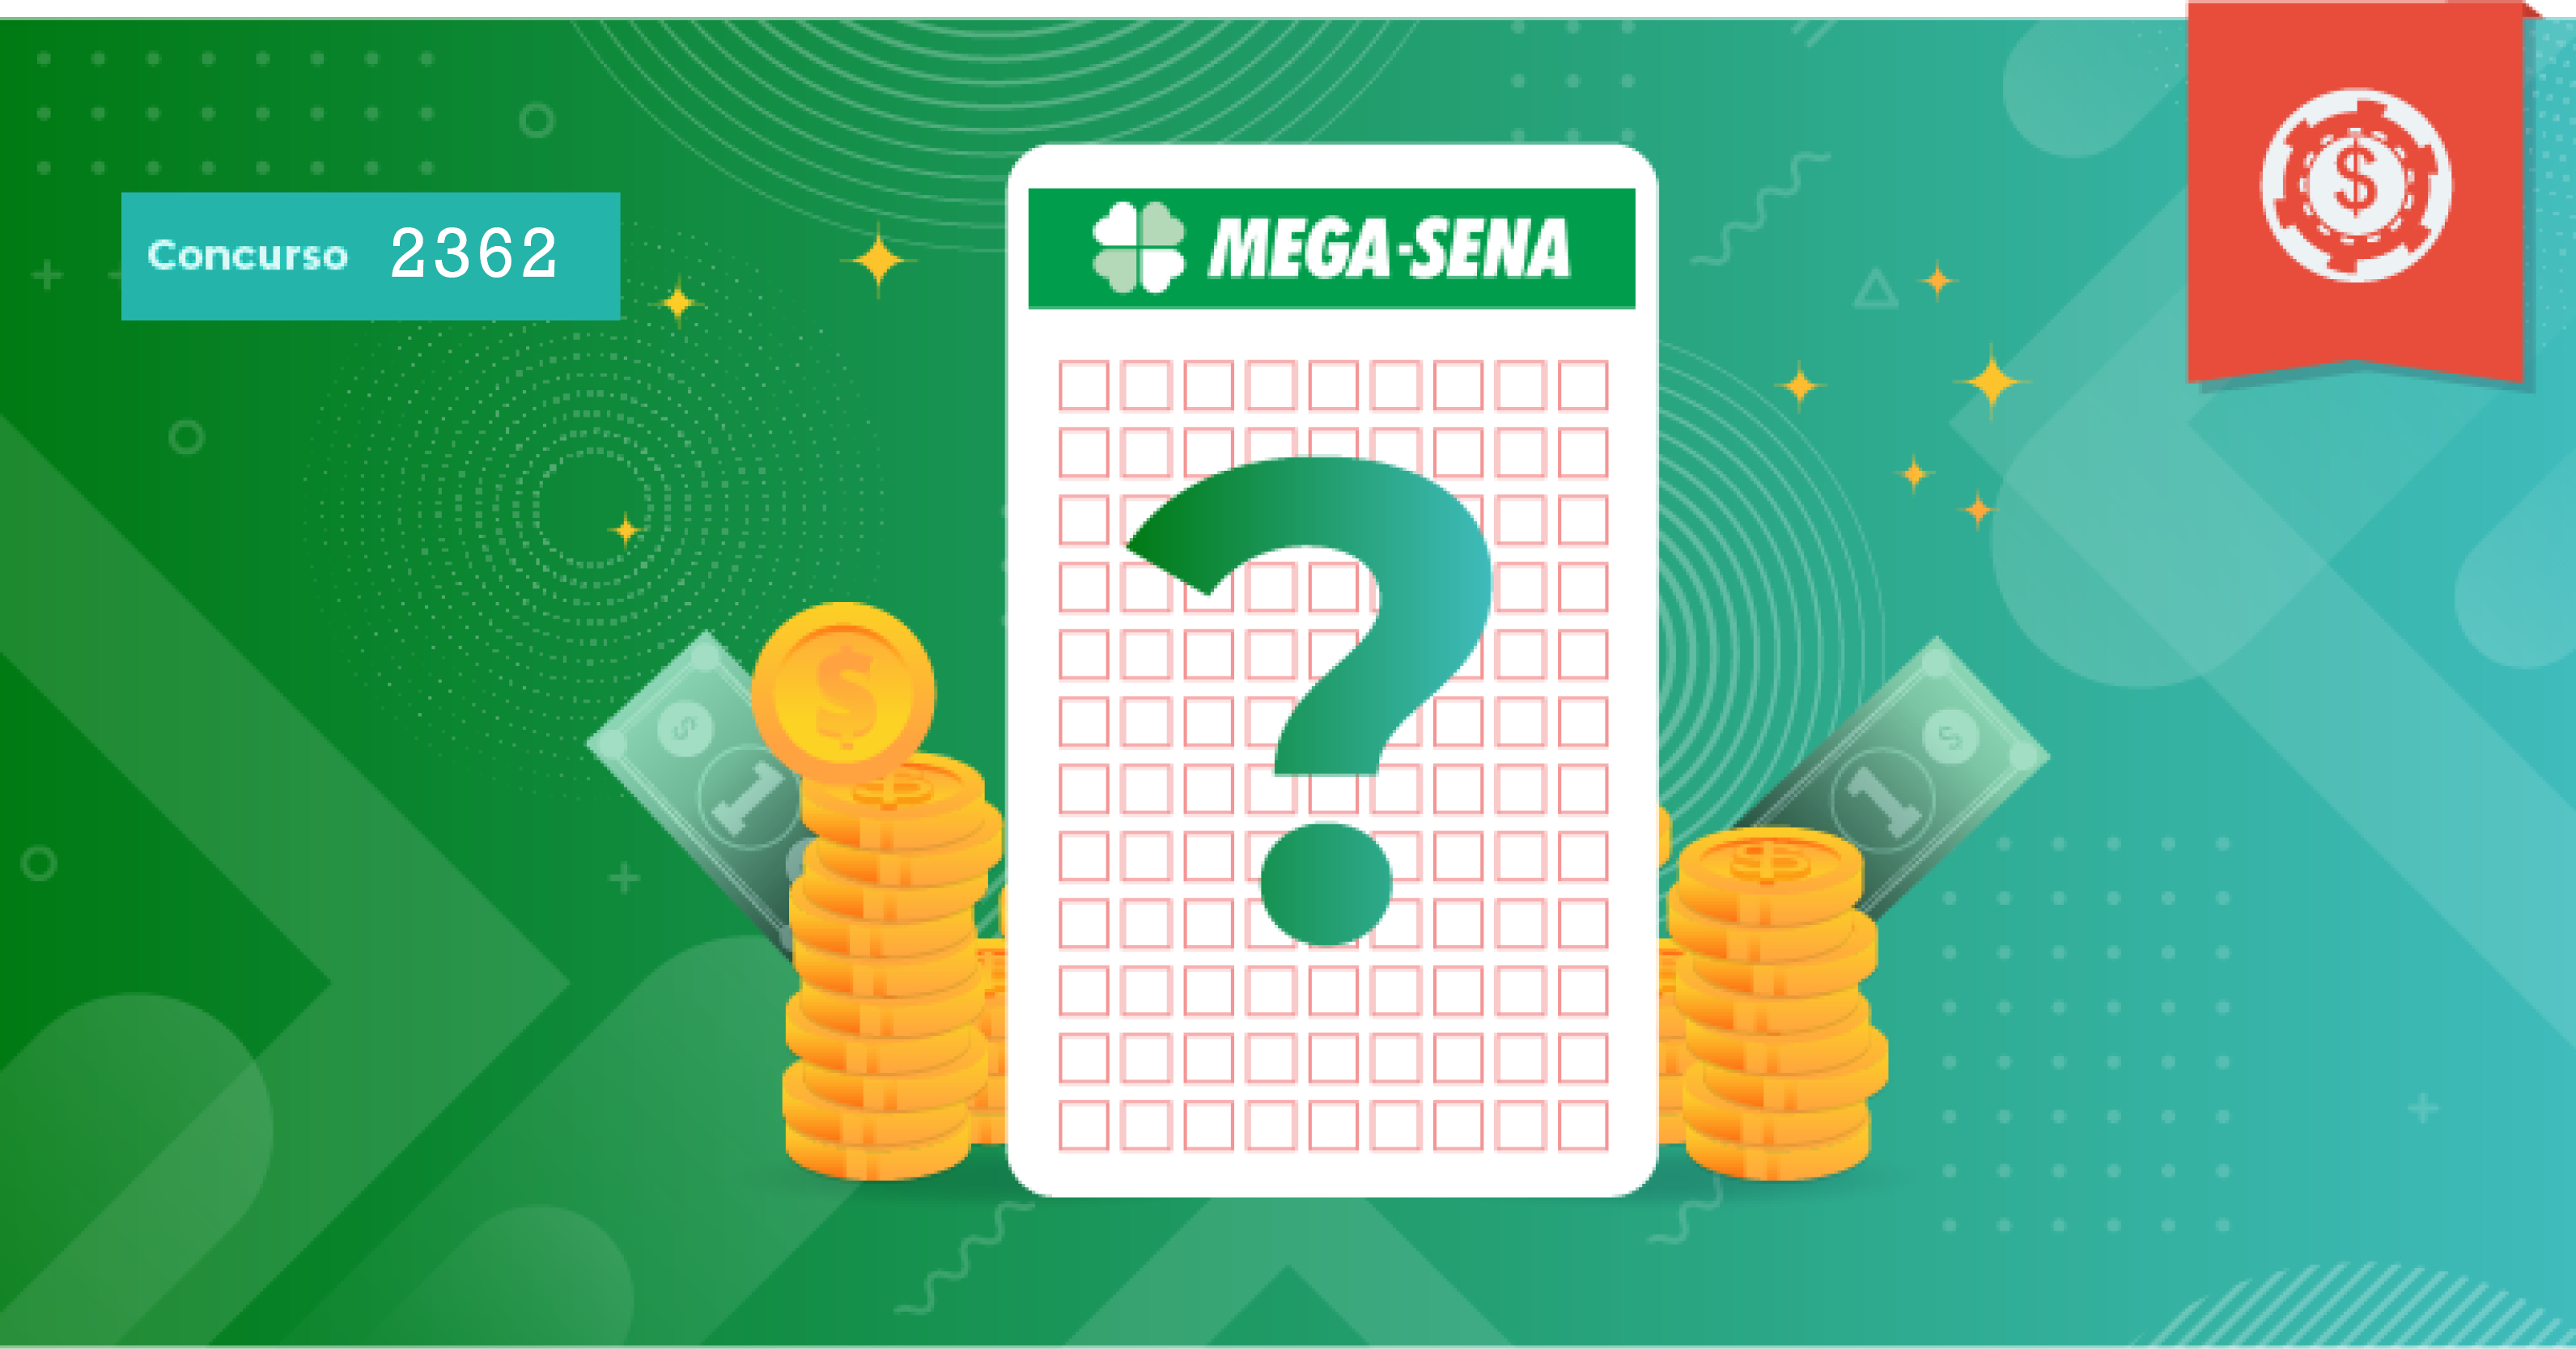 Palpites Mega-Sena 2362 • Dicas dos melhores números para jogar na Mega